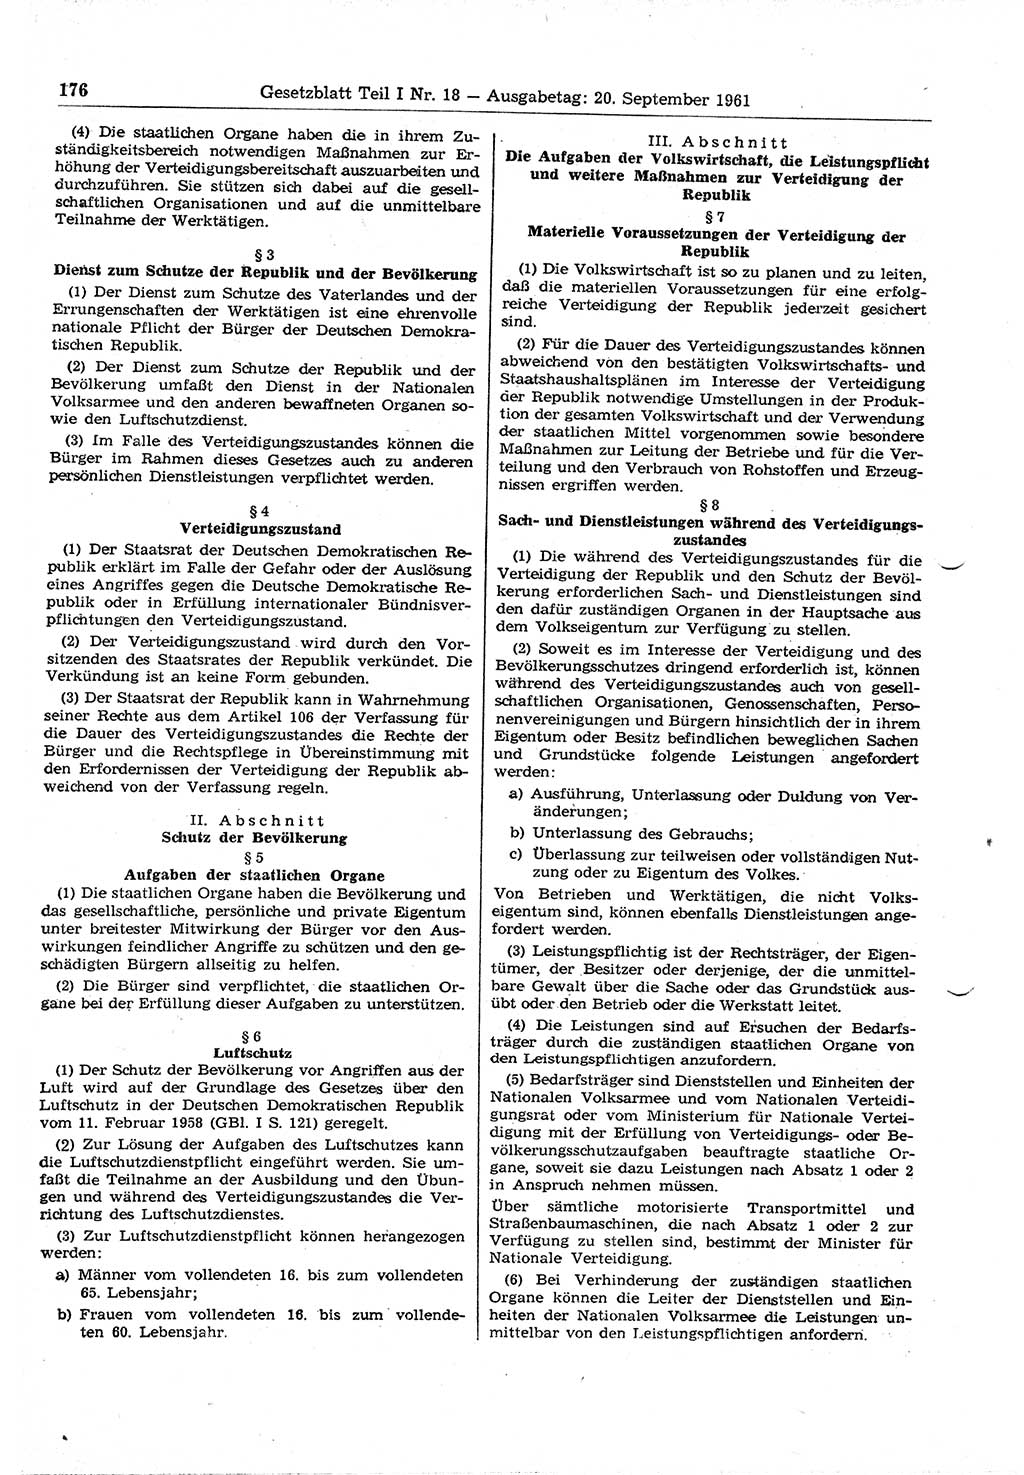 Gesetzblatt (GBl.) der Deutschen Demokratischen Republik (DDR) Teil Ⅰ 1961, Seite 176 (GBl. DDR Ⅰ 1961, S. 176)